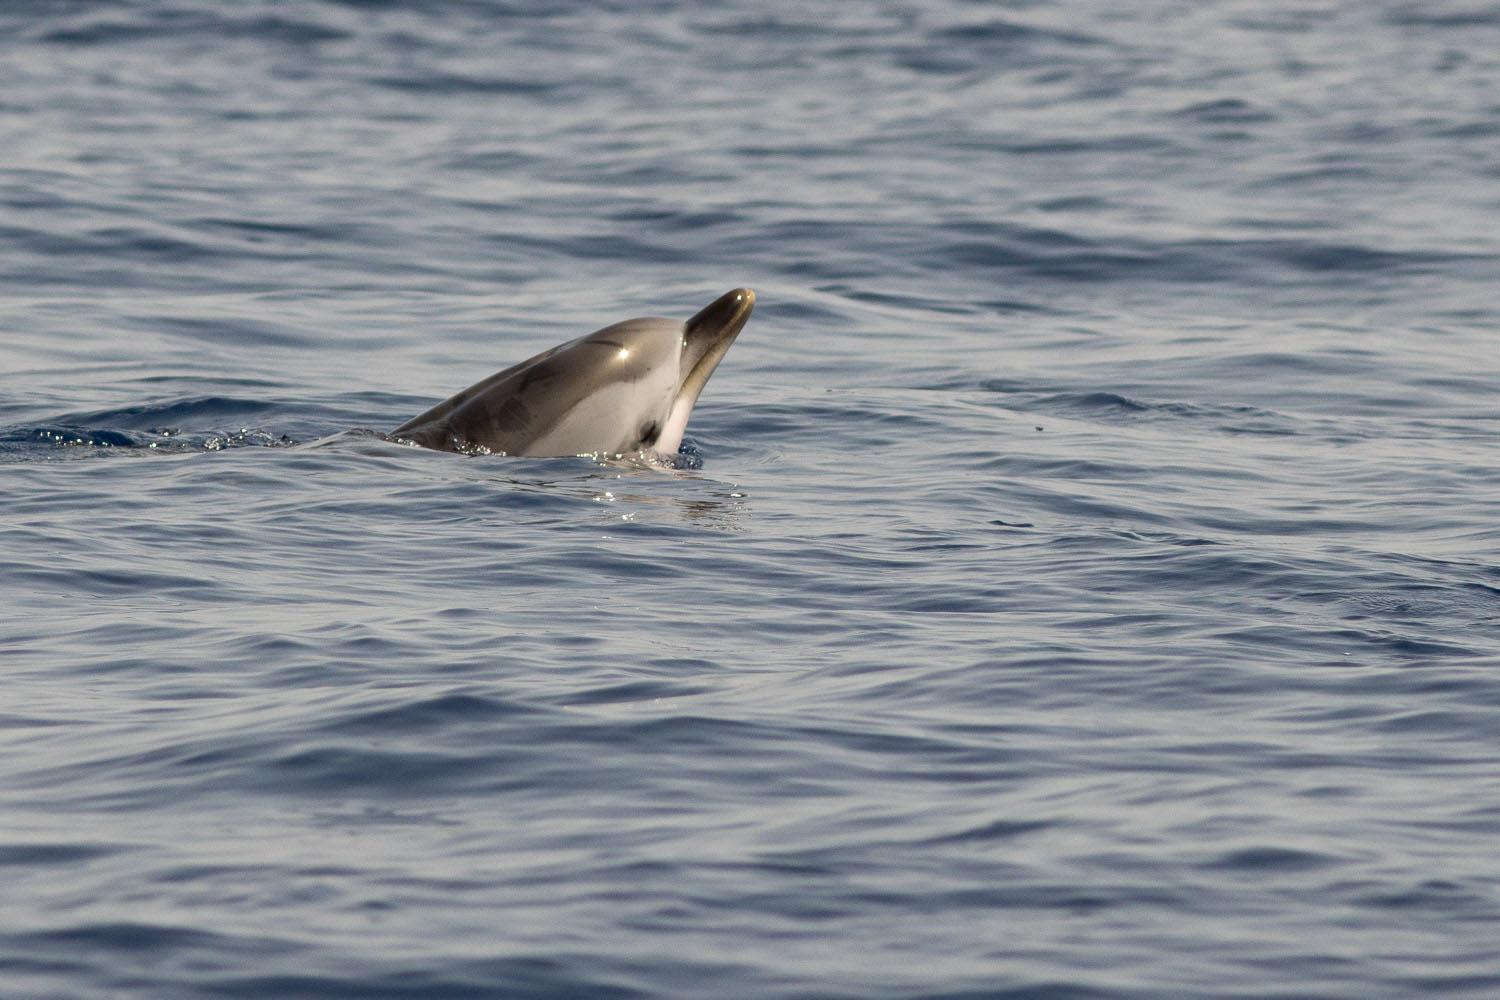 Stenella coeruleoalba (dauphin bleu et blanc) observé et photographié lors d'une croisière d'observation et d'étude des cétacés à la voile - du Var à la Corse